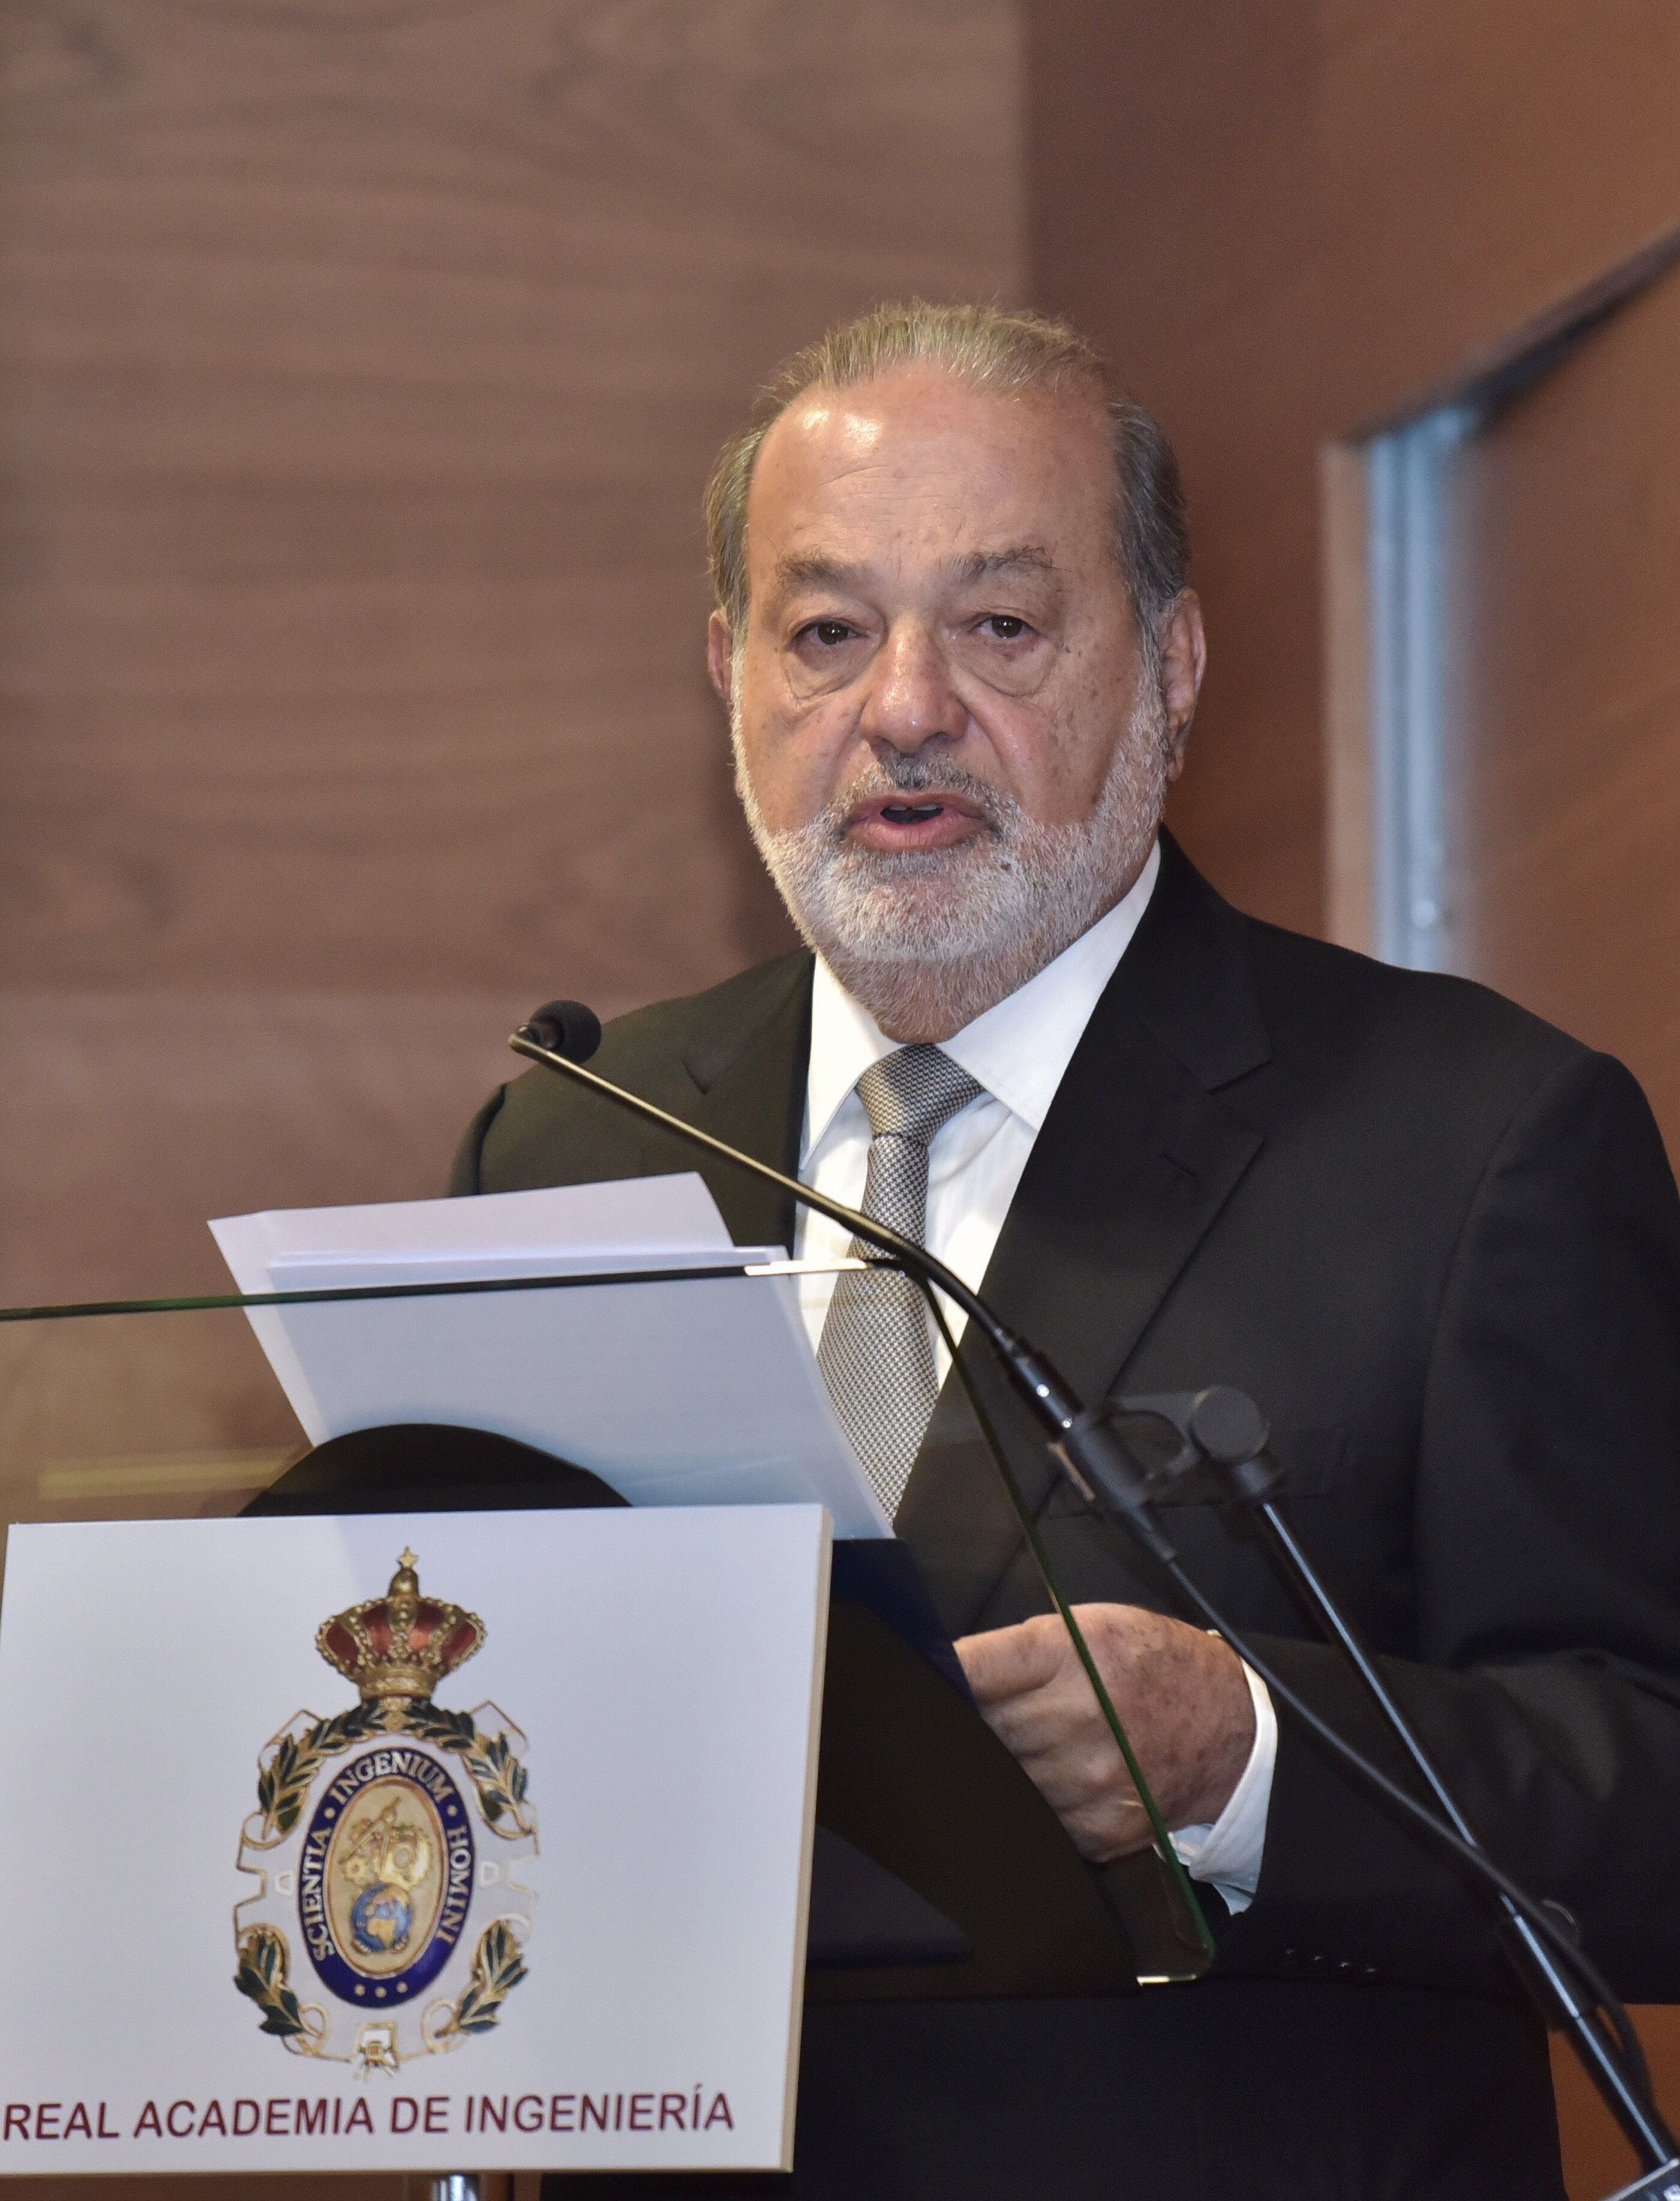 29-06-2017 Carlos Slim durante su discurso al entrar en la Real Academia de IngenieríaECONOMIA EMPRESAS ESPAÑA EUROPAREAL ACADEMIA DE INGENIERÍA